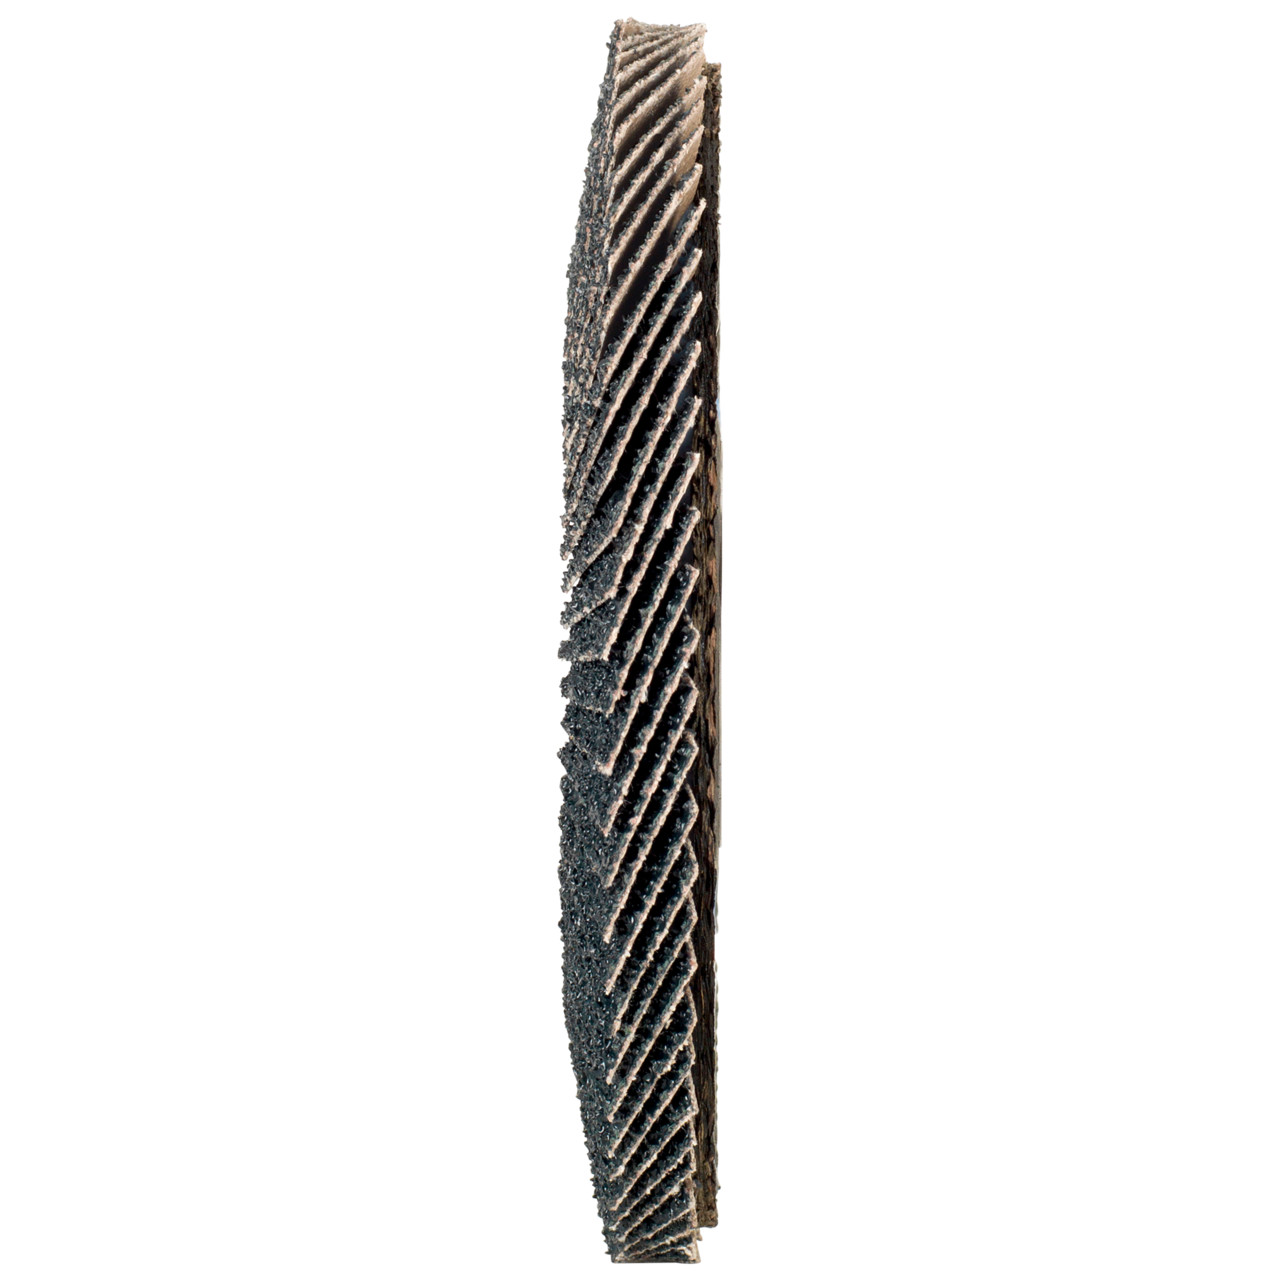 TYROLIT Fächerscheibe DxH 125x22,2 2in1 für Stahl & Edelstahl, P60, Form: 27A - gekröpfte Ausführung (Glasfaserträgerkörperausführung), Art. 668664